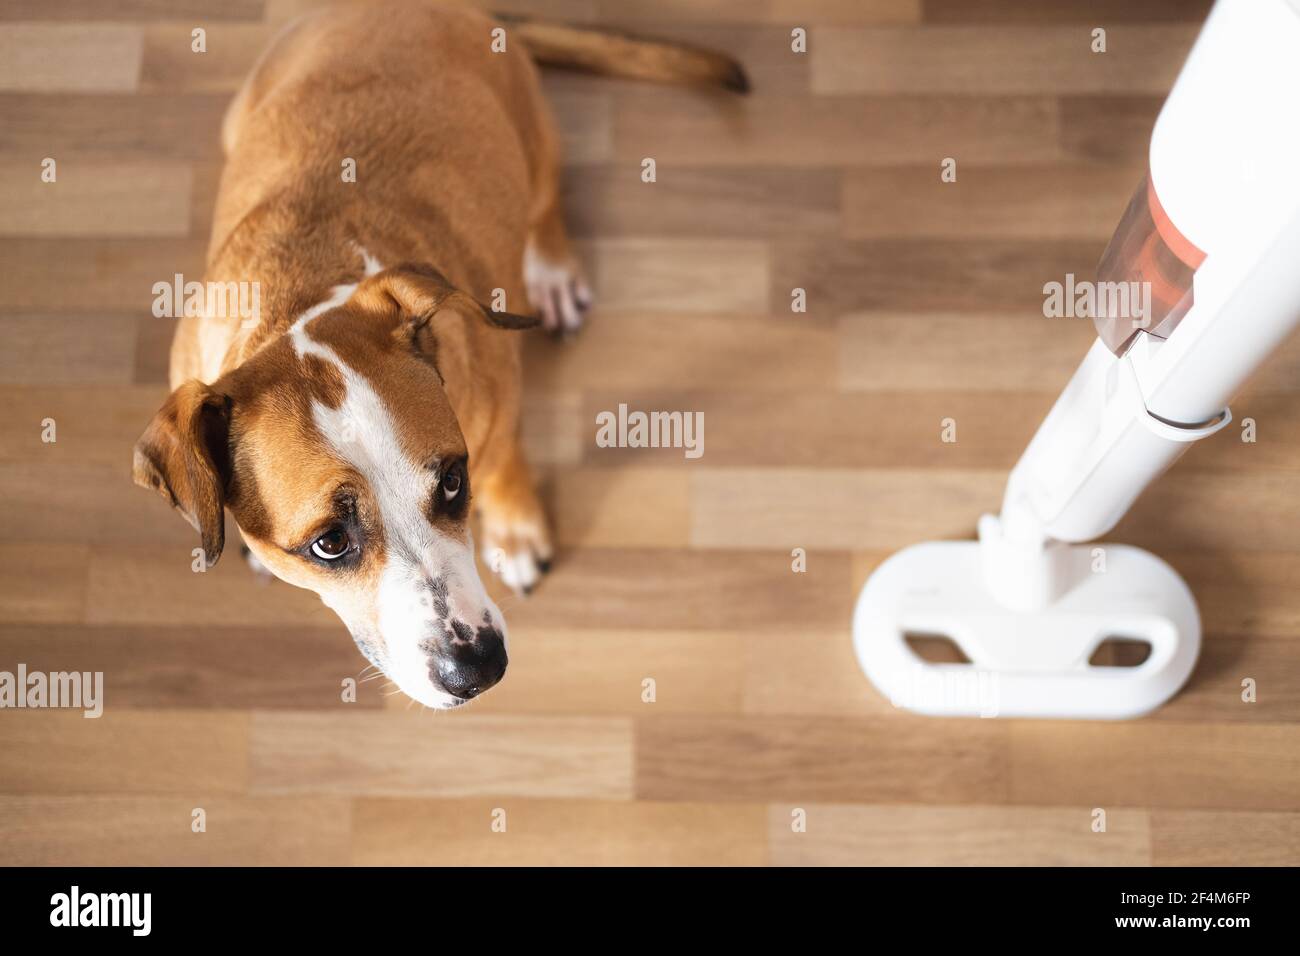 Hund schaut auf einen Staubsauger. Haustiere mit Haushaltsgegenständen, Welpen hat Angst vor einem lauten Staubsauger Stockfoto